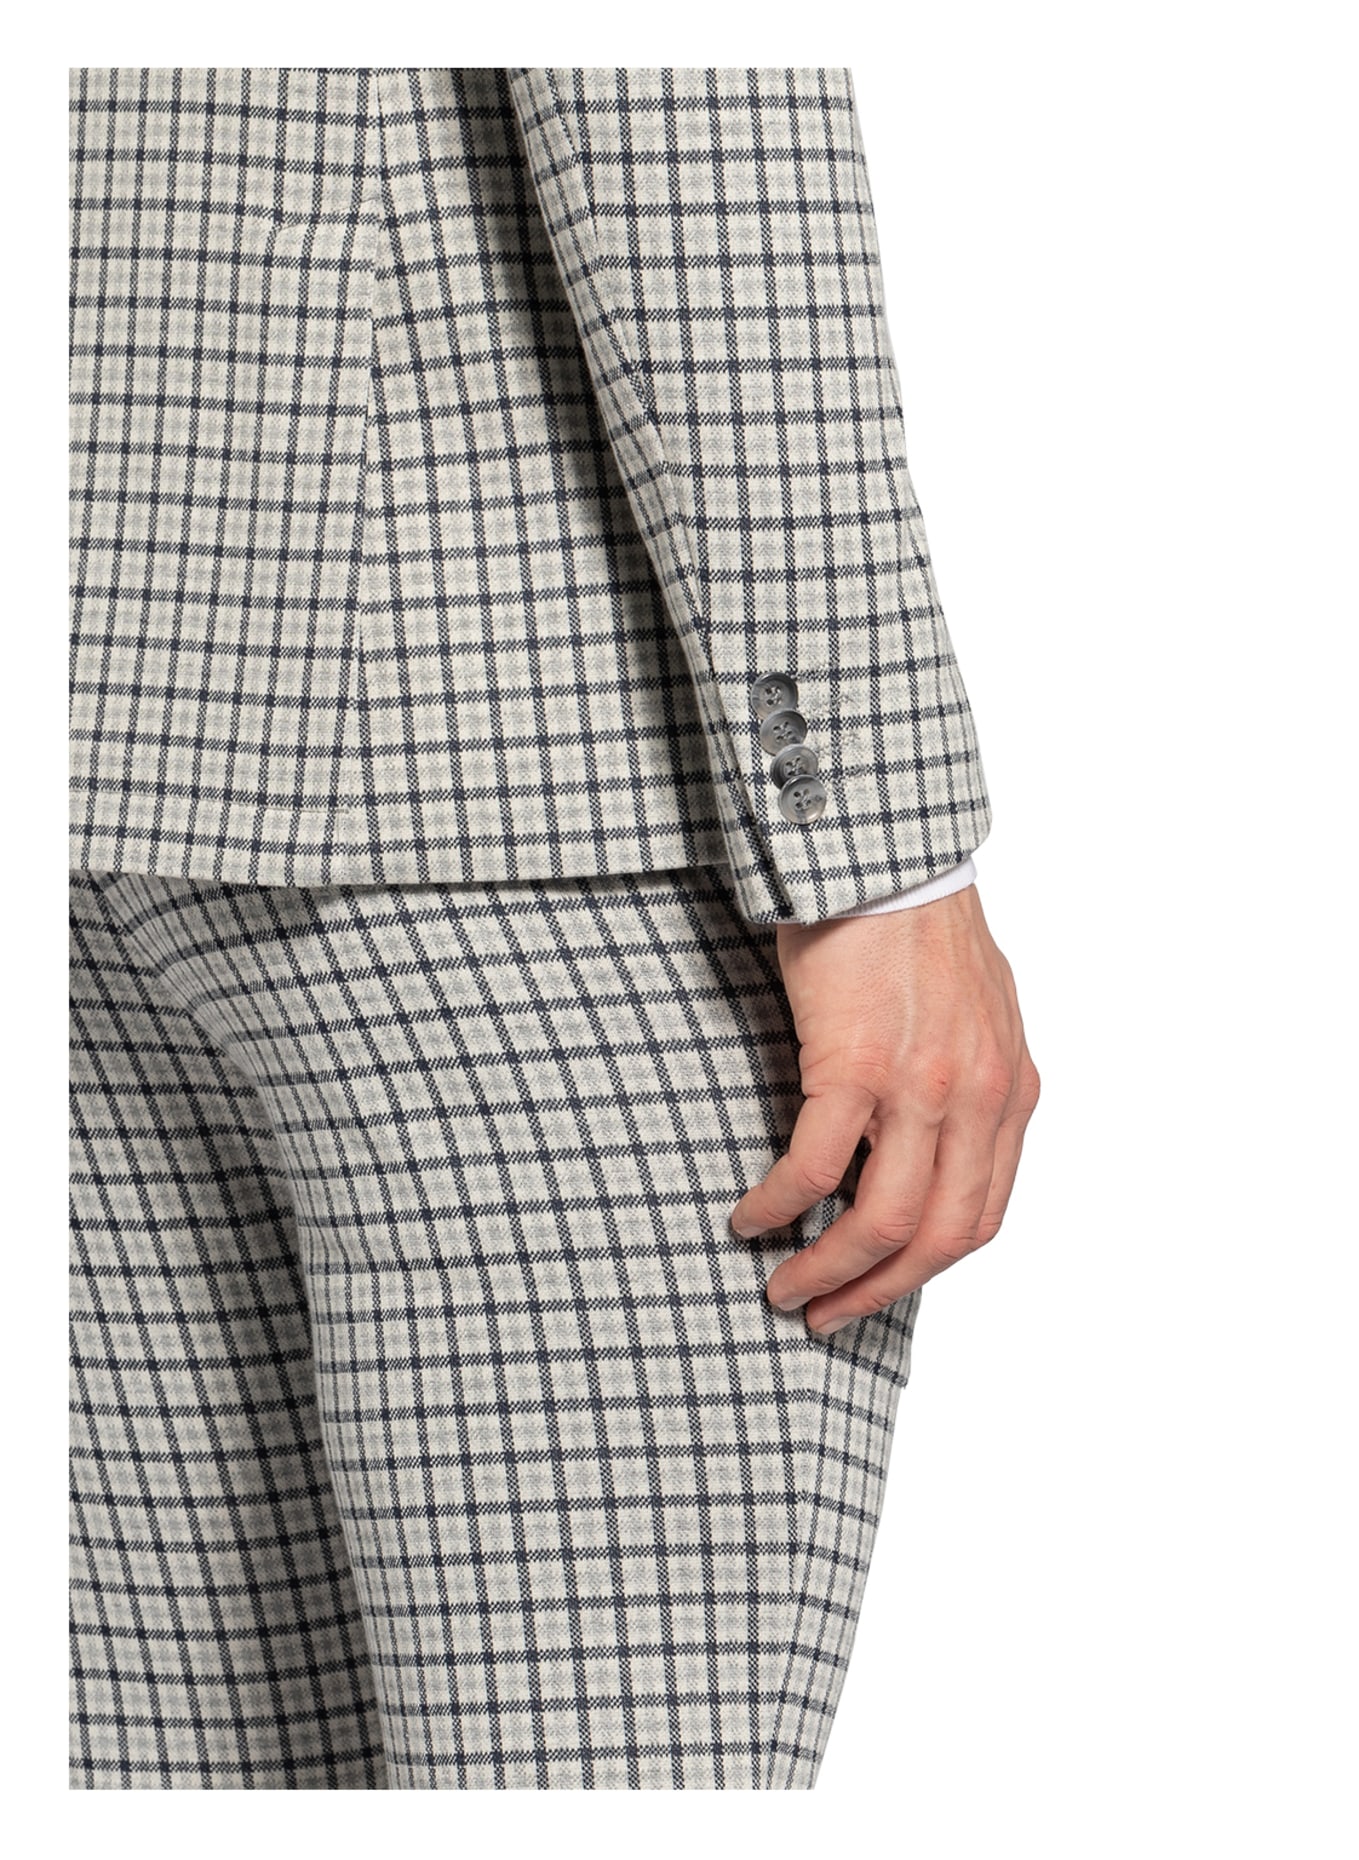 PAUL Suit jacket Slim Fit, Color: 670 NAVY (Image 5)